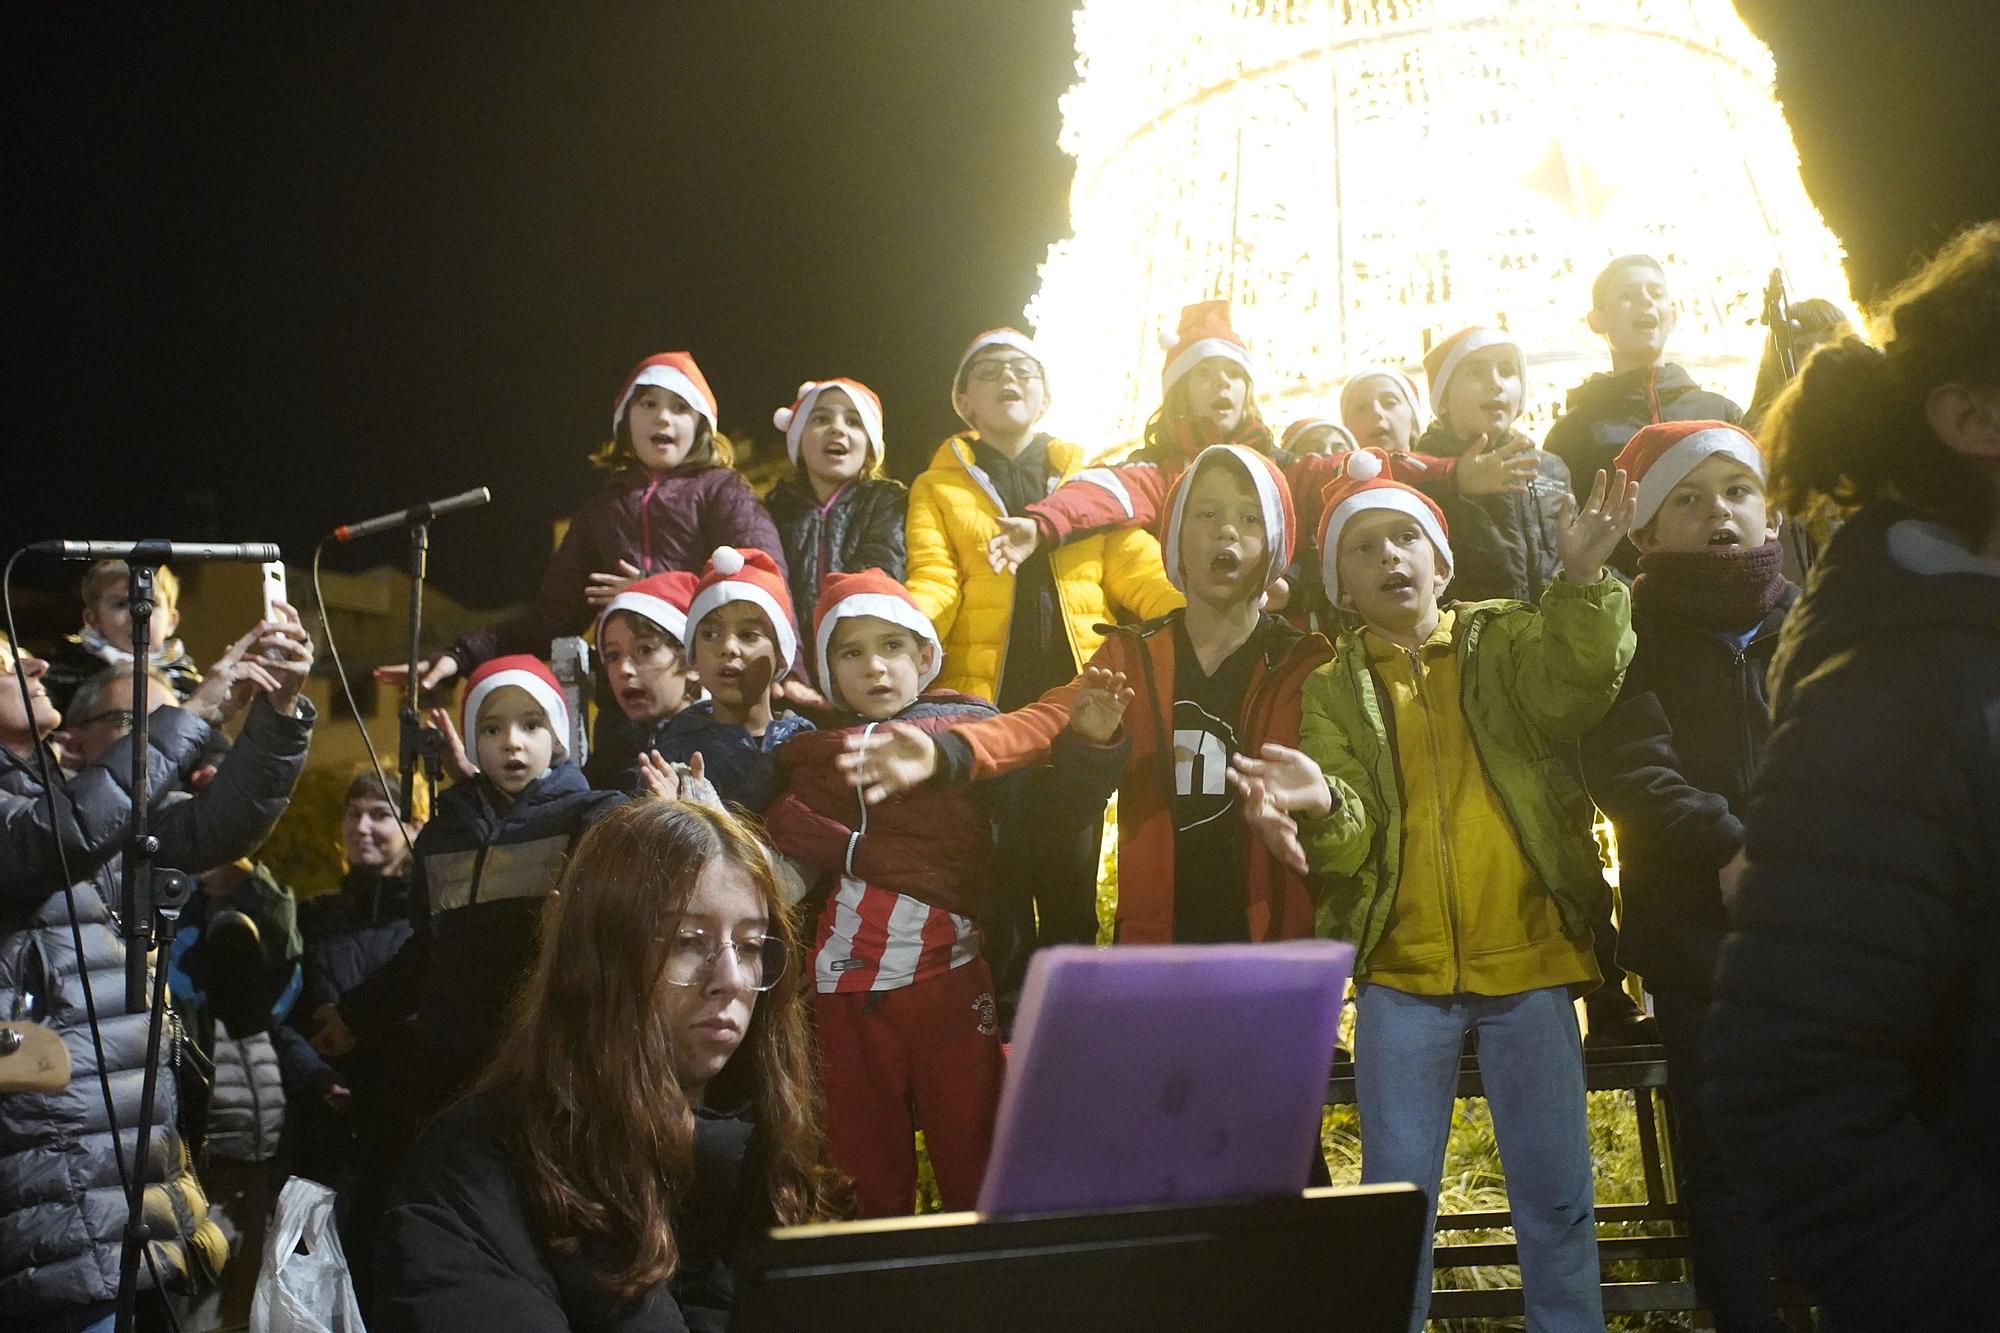 La màgia de Nadal atura la pluja i encén els llums a Girona